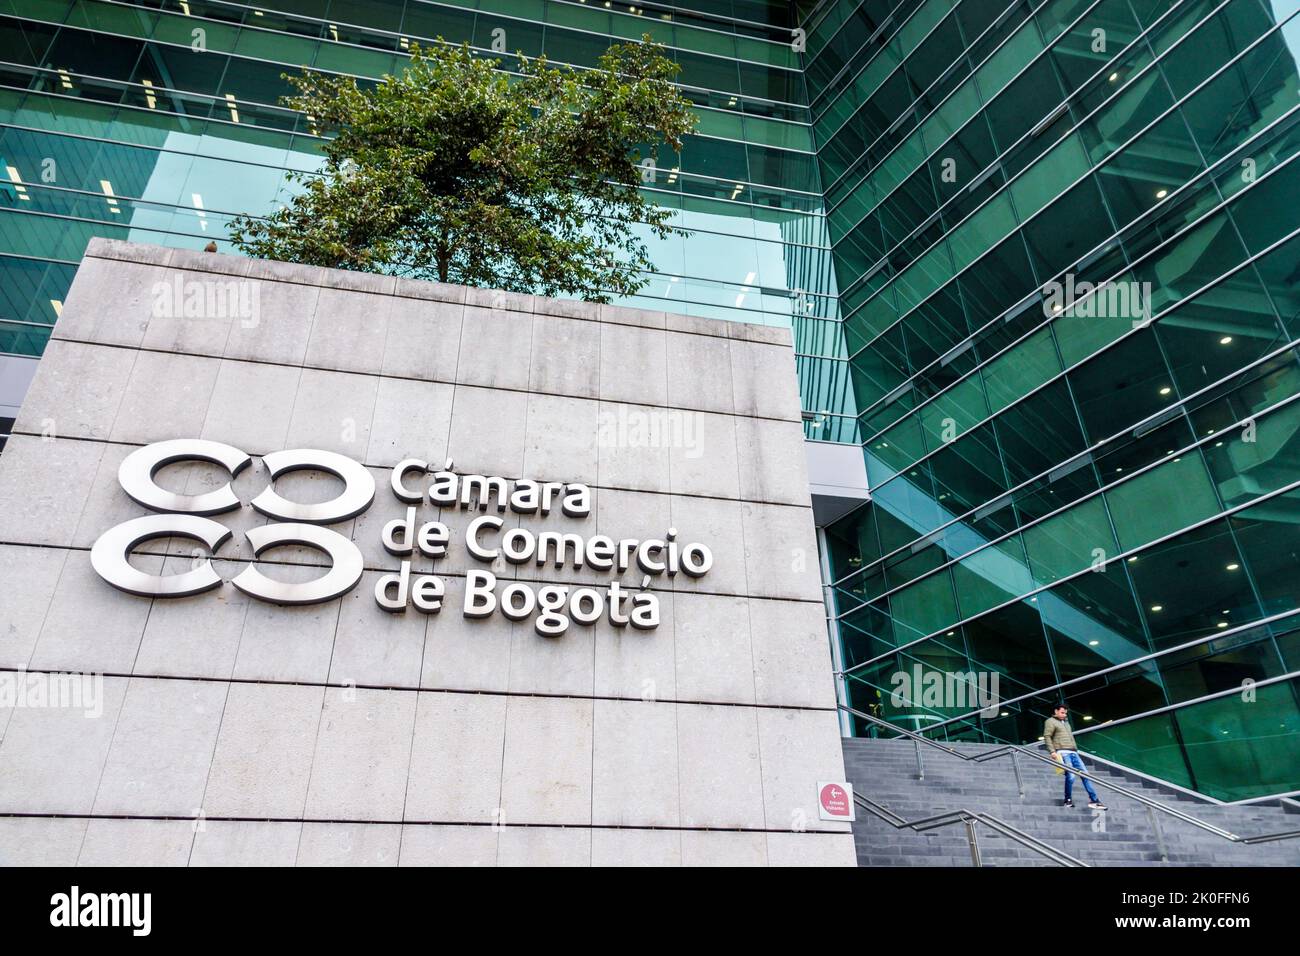 Bogota Colombie,Avenida El Dorado Calle 26,Camara de Comercio de Bogota Chambre de commerce immeuble de bureaux à l'extérieur de l'entrée extérieure, colombienne Banque D'Images